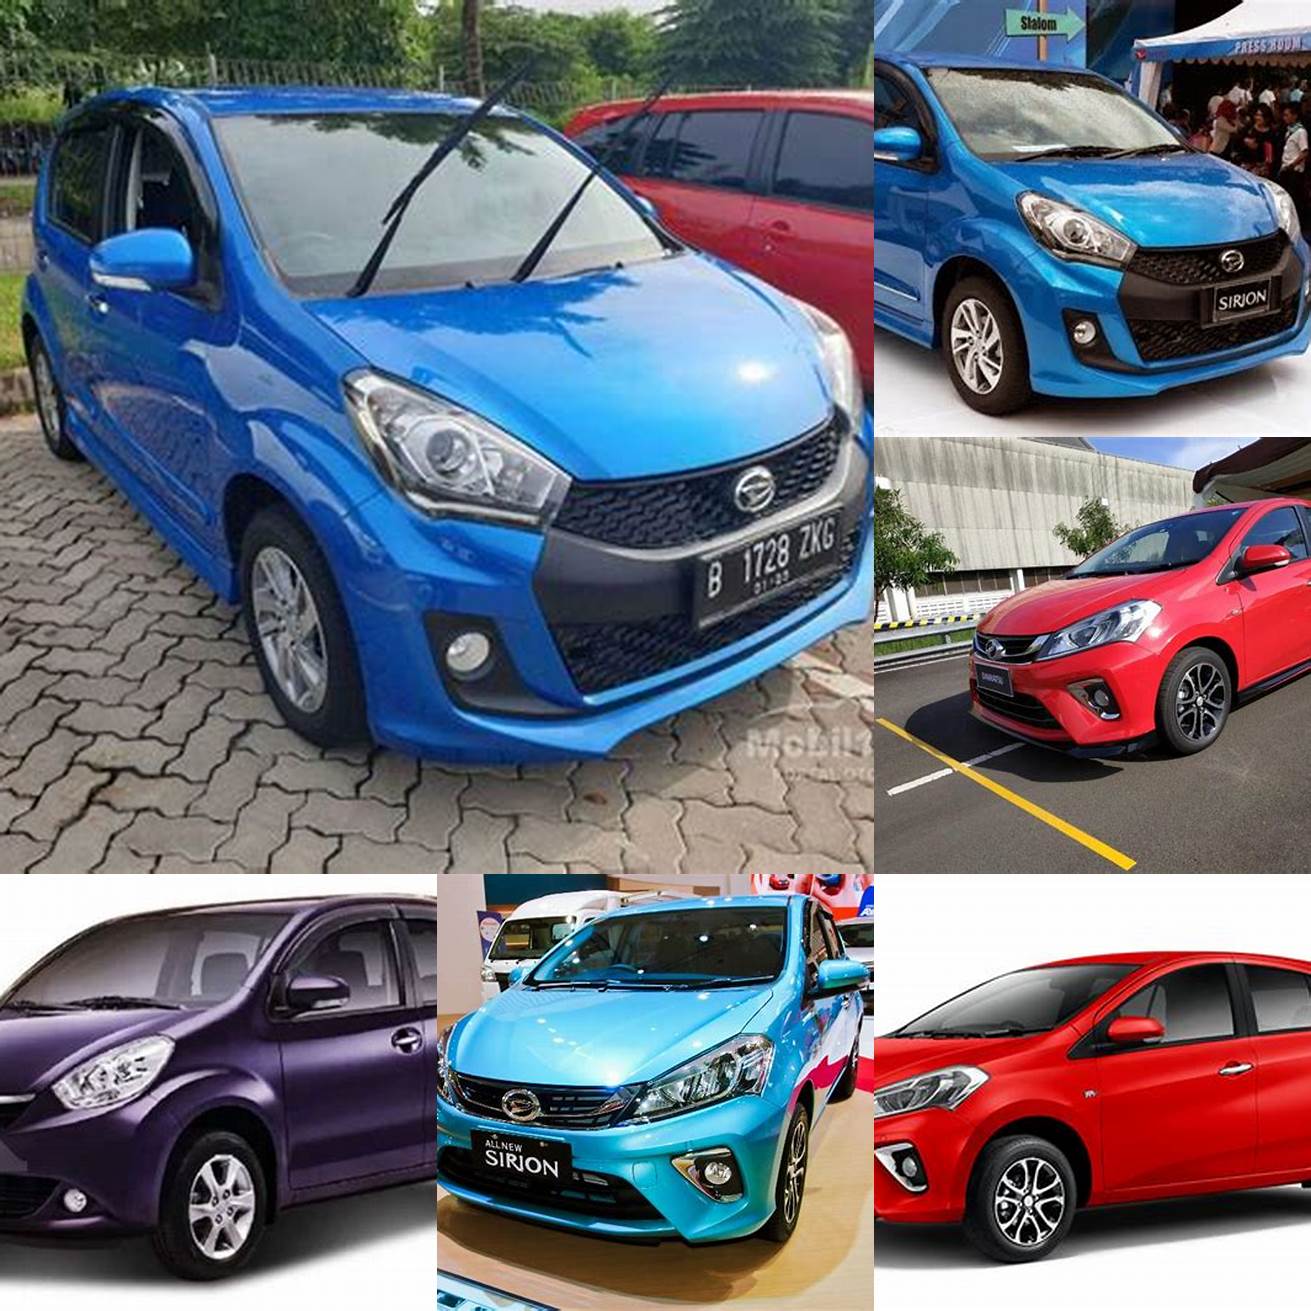 Harga mobil Sirion bekas tahun 2017 - 2019 berkisar antara 150 - 180 juta rupiah